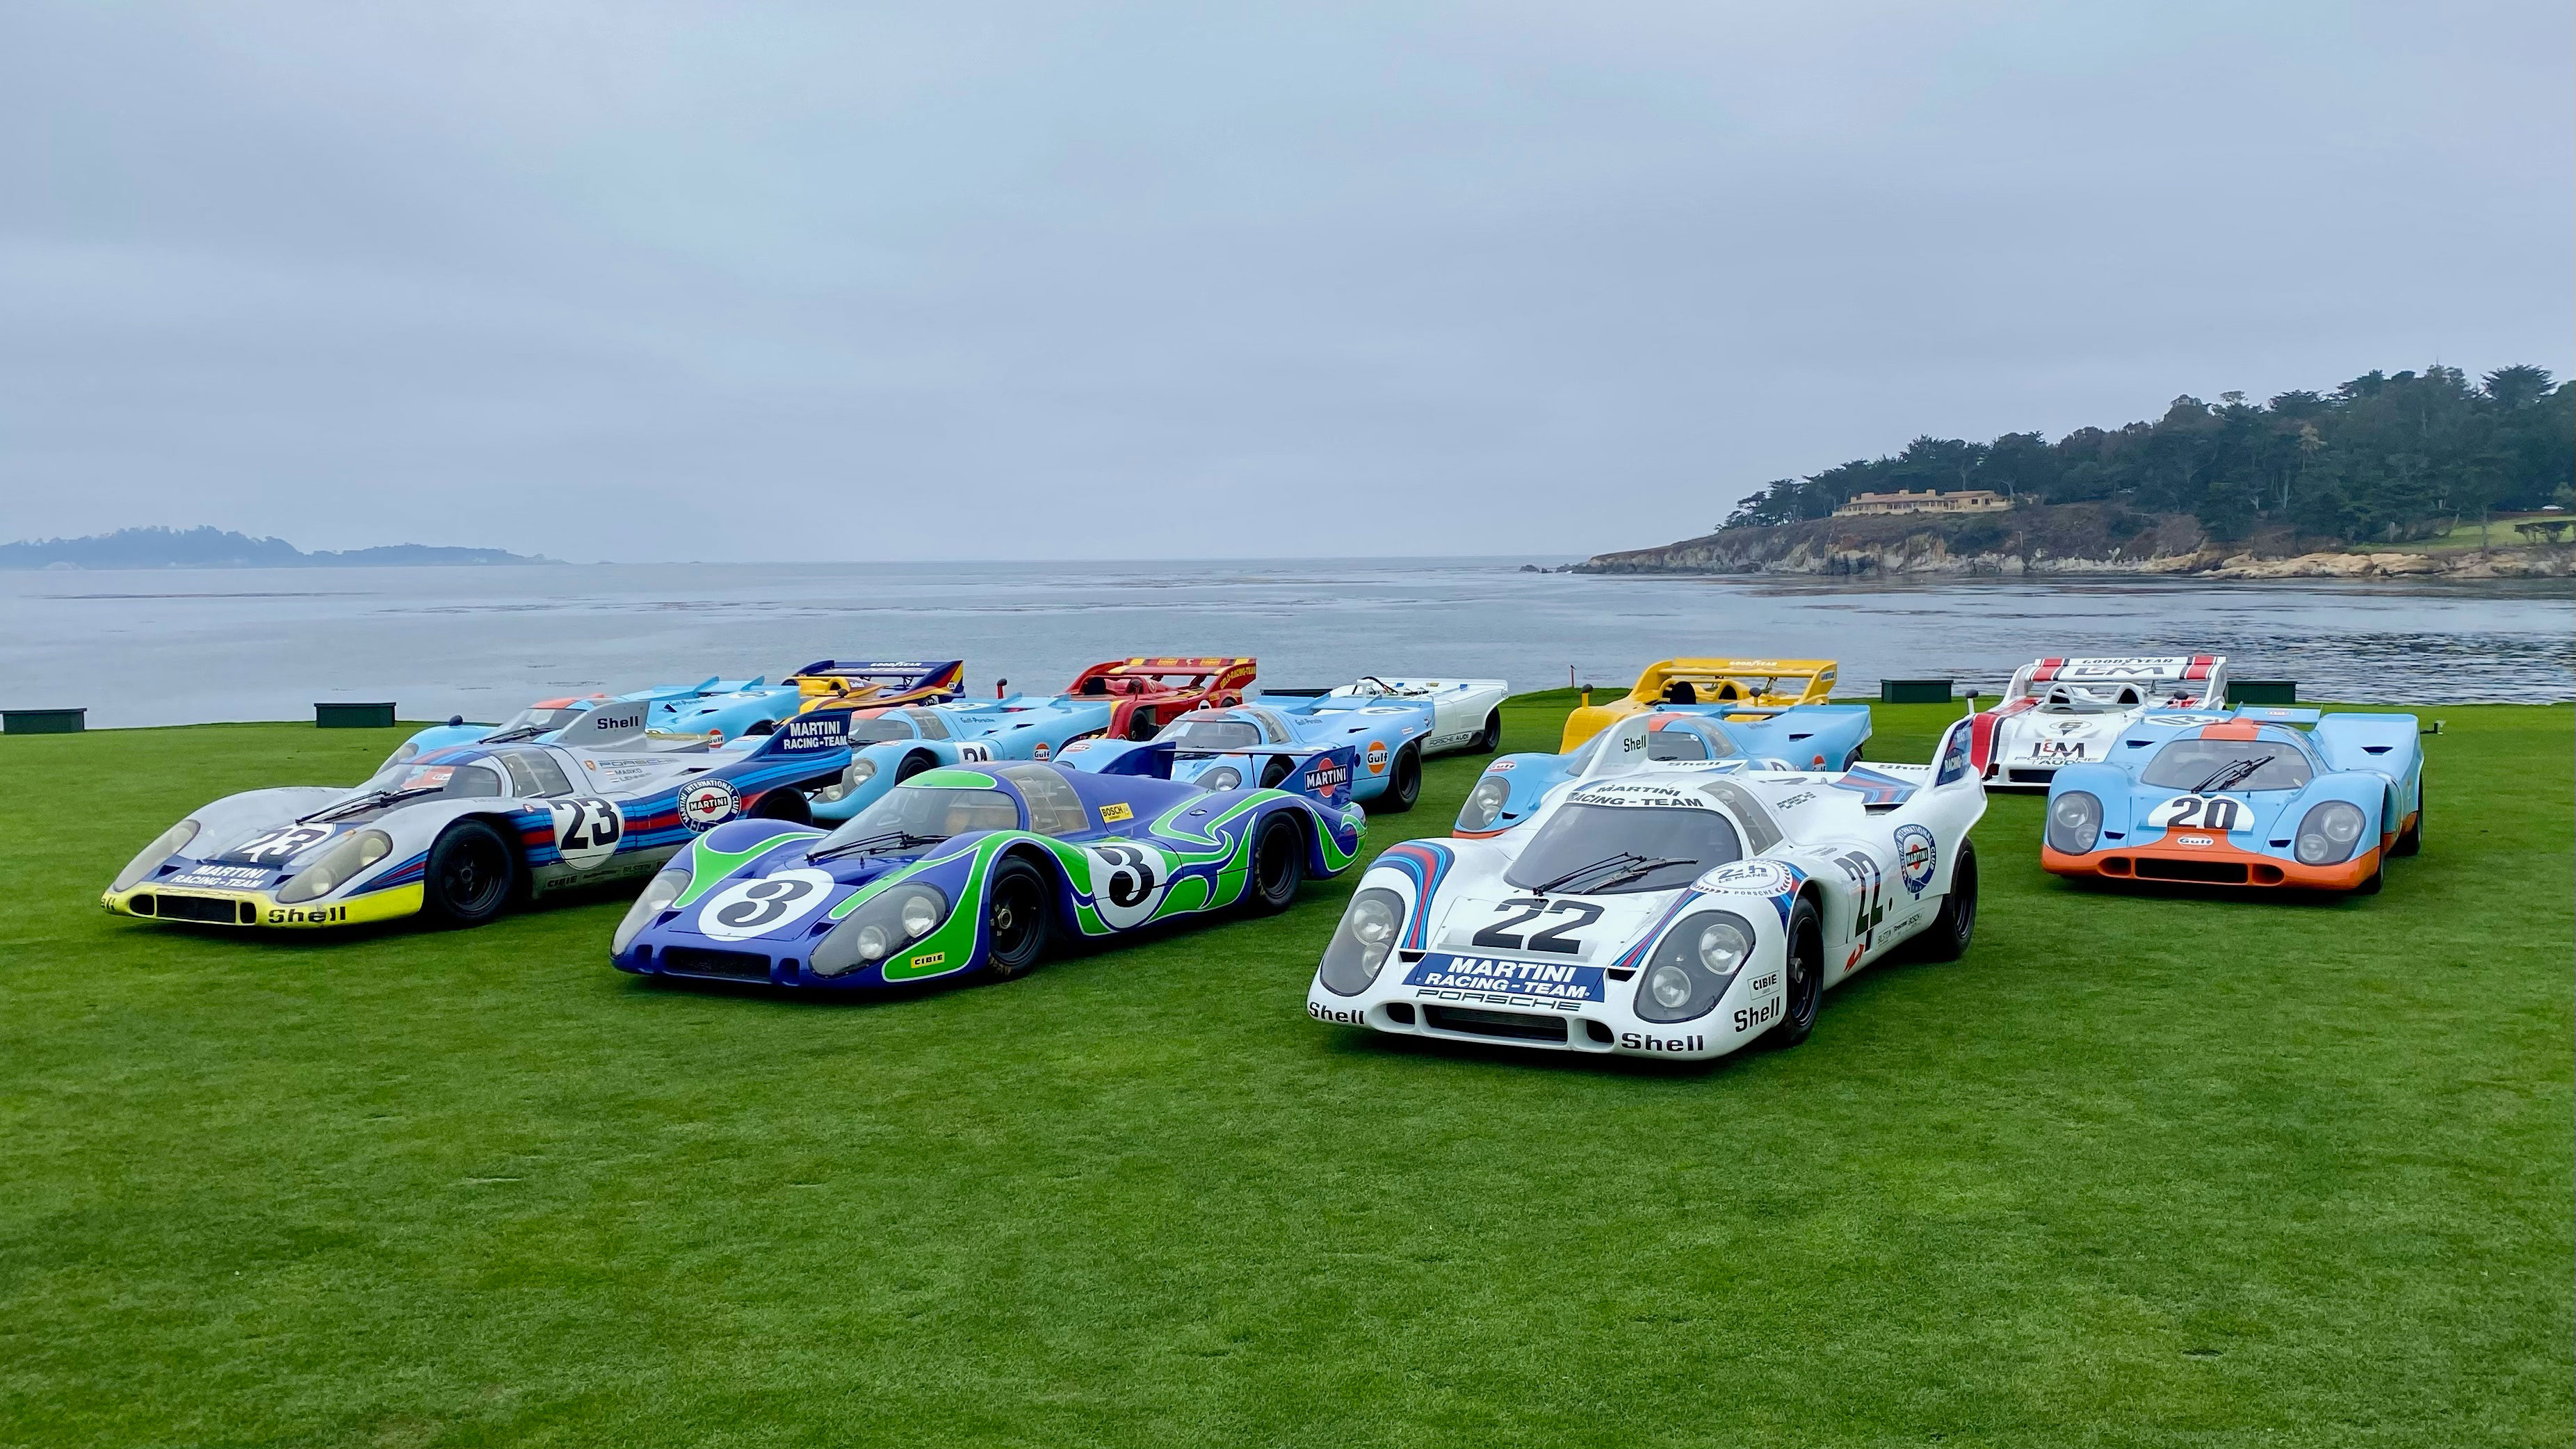 The Porsche 917 KH a Le Mans legend visits Monterey Car Week Porsche